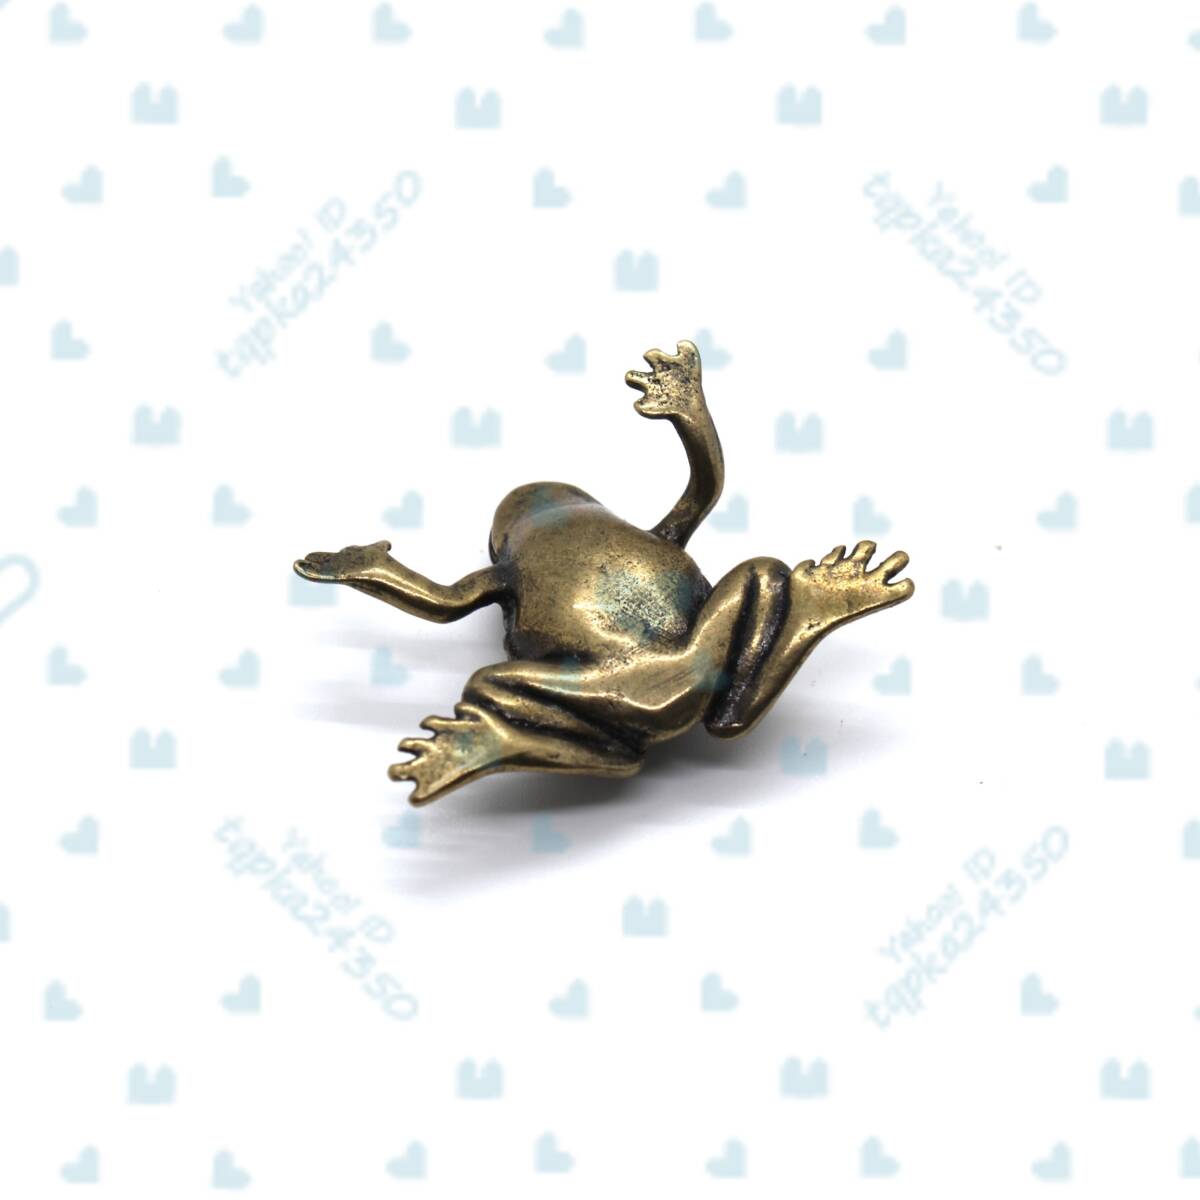 20g 蛙 アマガエル カエル ヒキガエル 銭ガエル かわいい 縁起 金運アップ 置物 金物 小物 雑貨 ペーパー ウェイト 金属 銅 真鍮 fr20